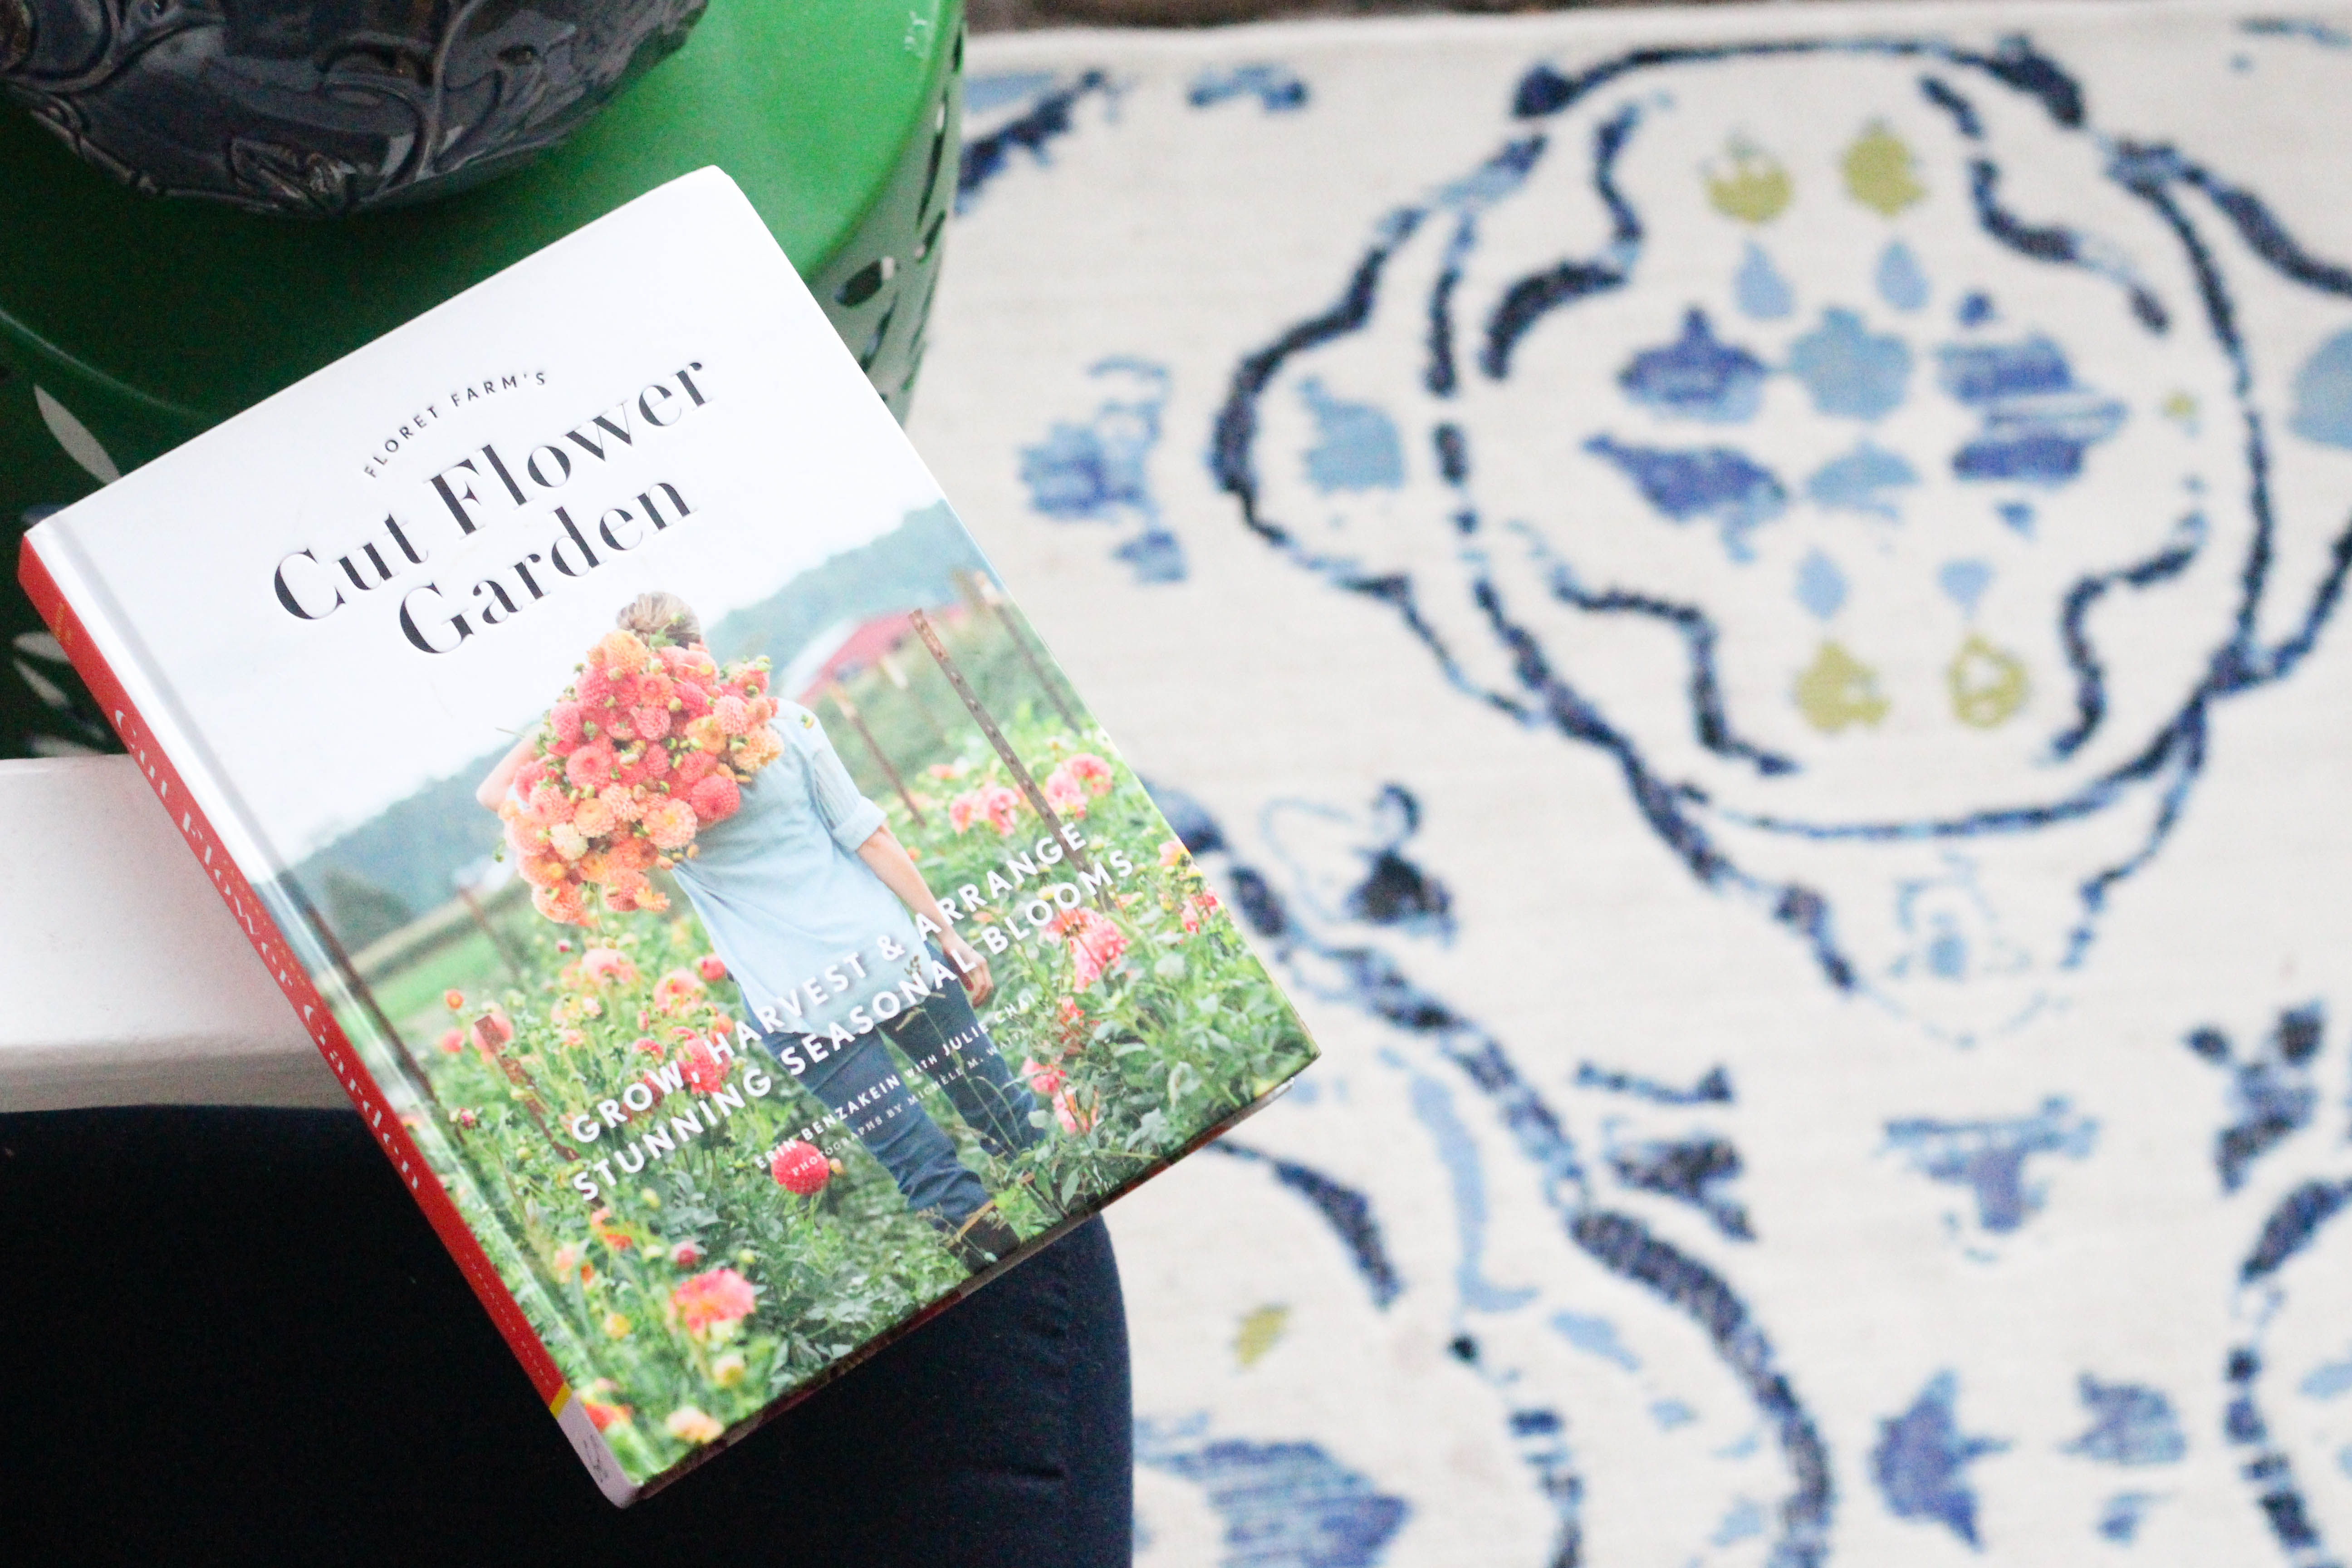 Floret Farm's Cut Flower Garden Book Chat